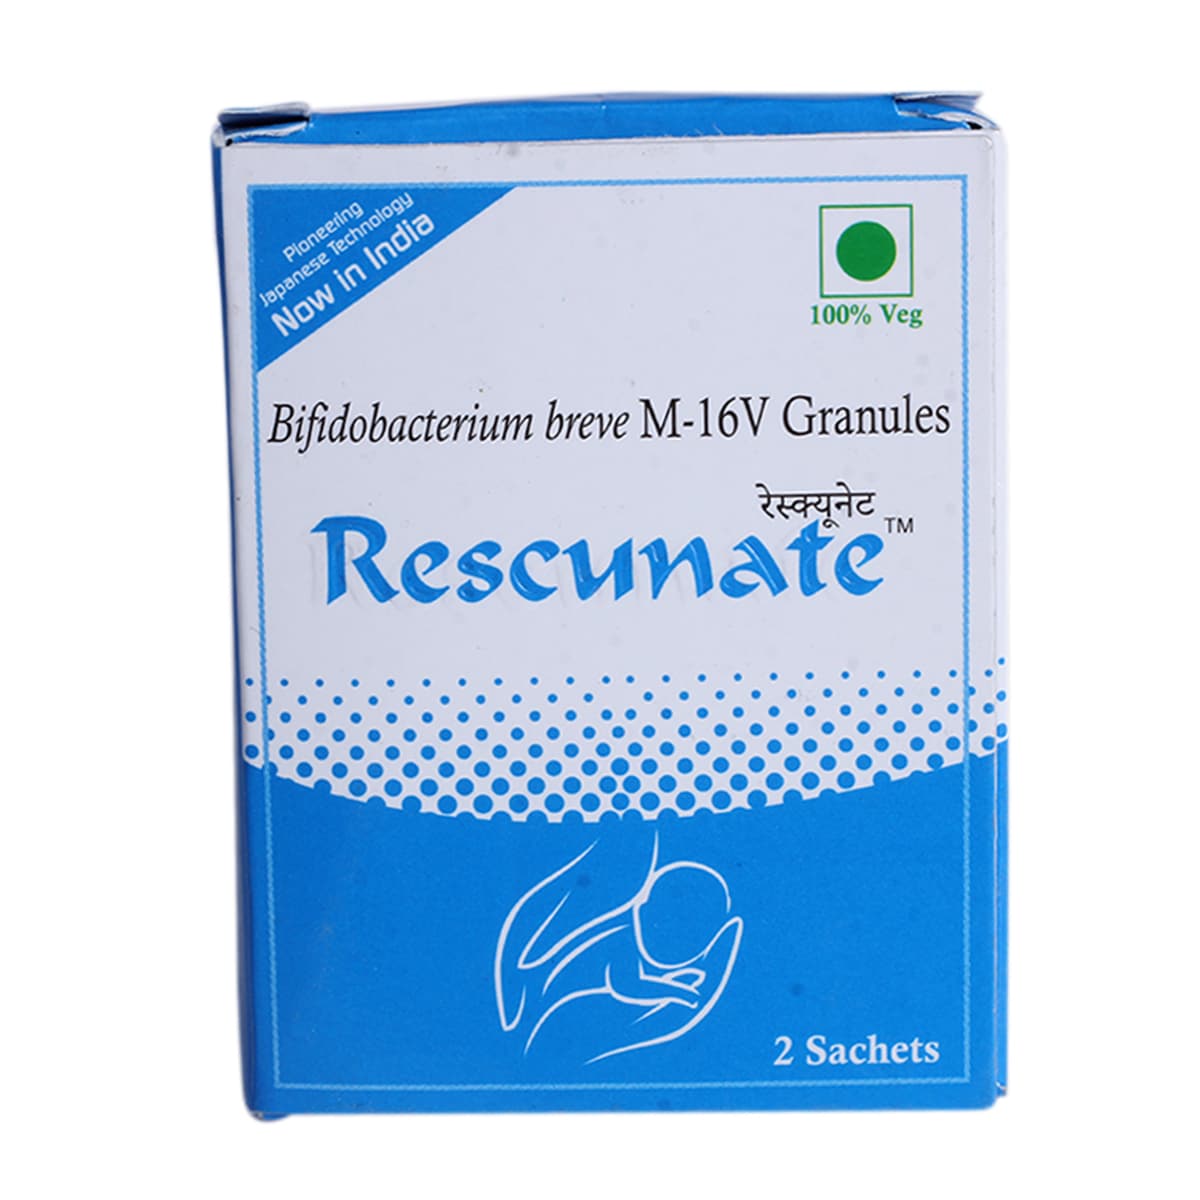 Buy Rescunate Granules 0.5 gm Online